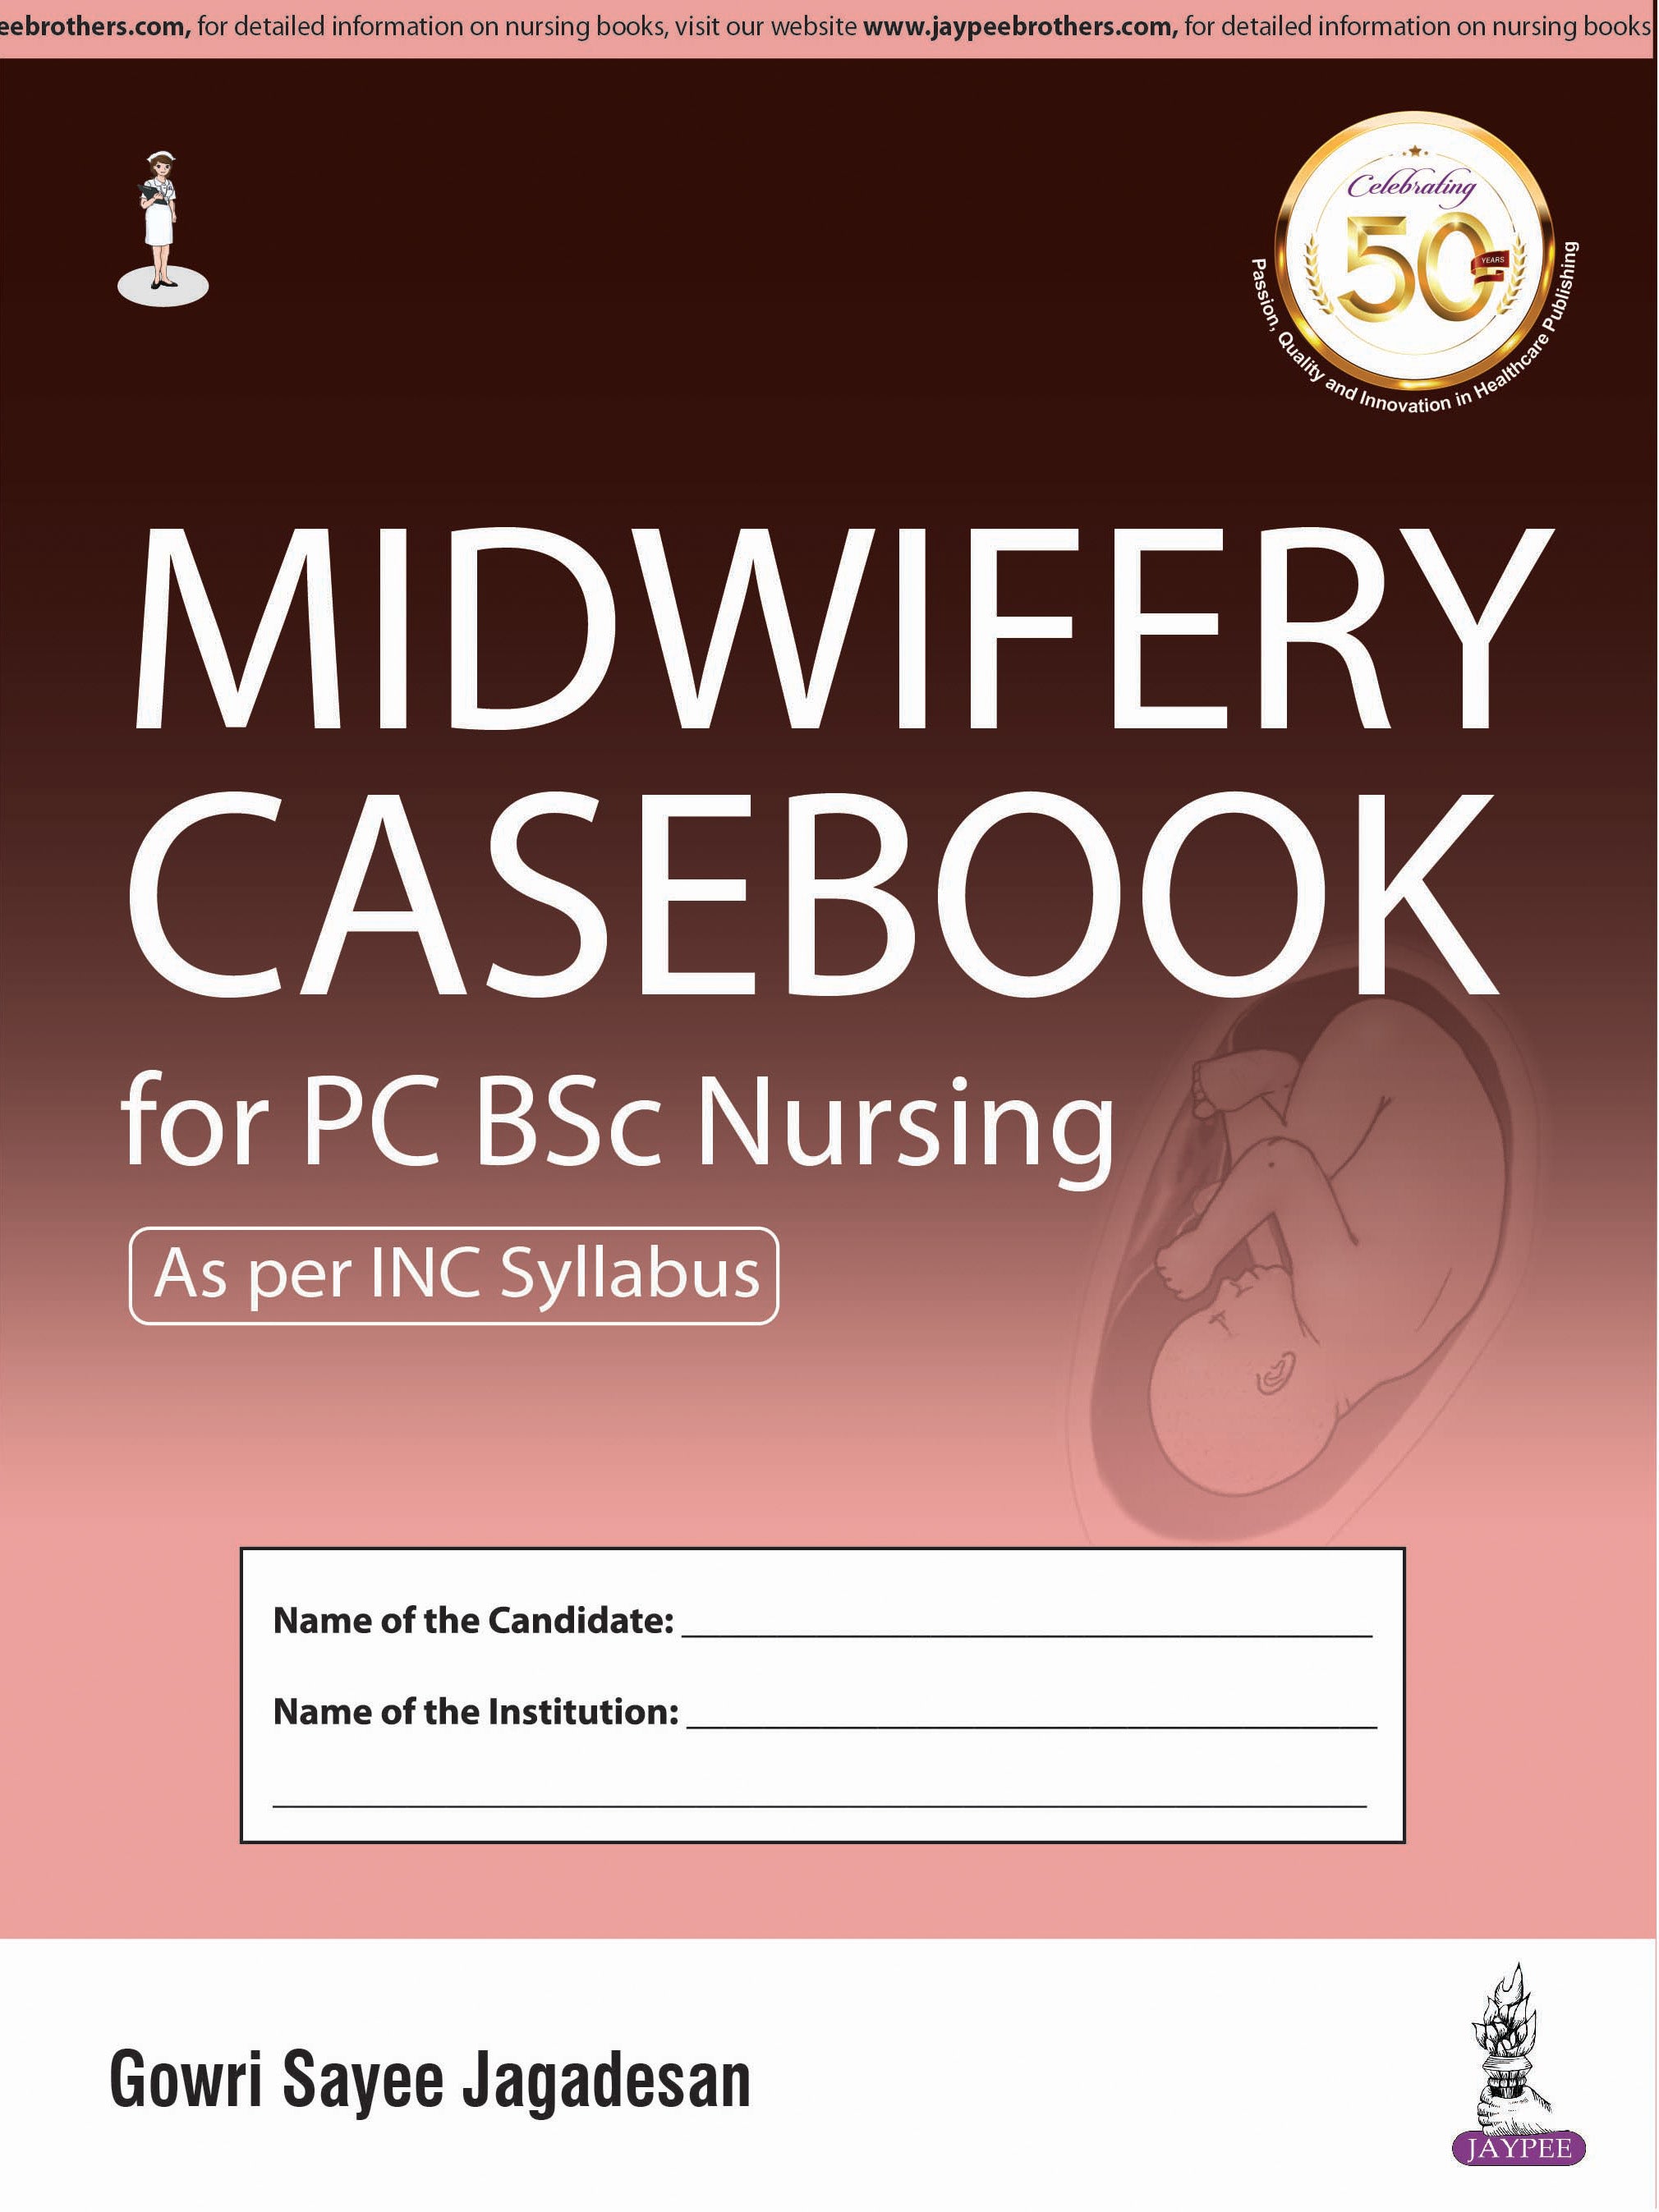 MIDWIFERY CASEBOOK FOR PC BSC NURSING,1/E,GOWRI SAYEE JAGADESAN